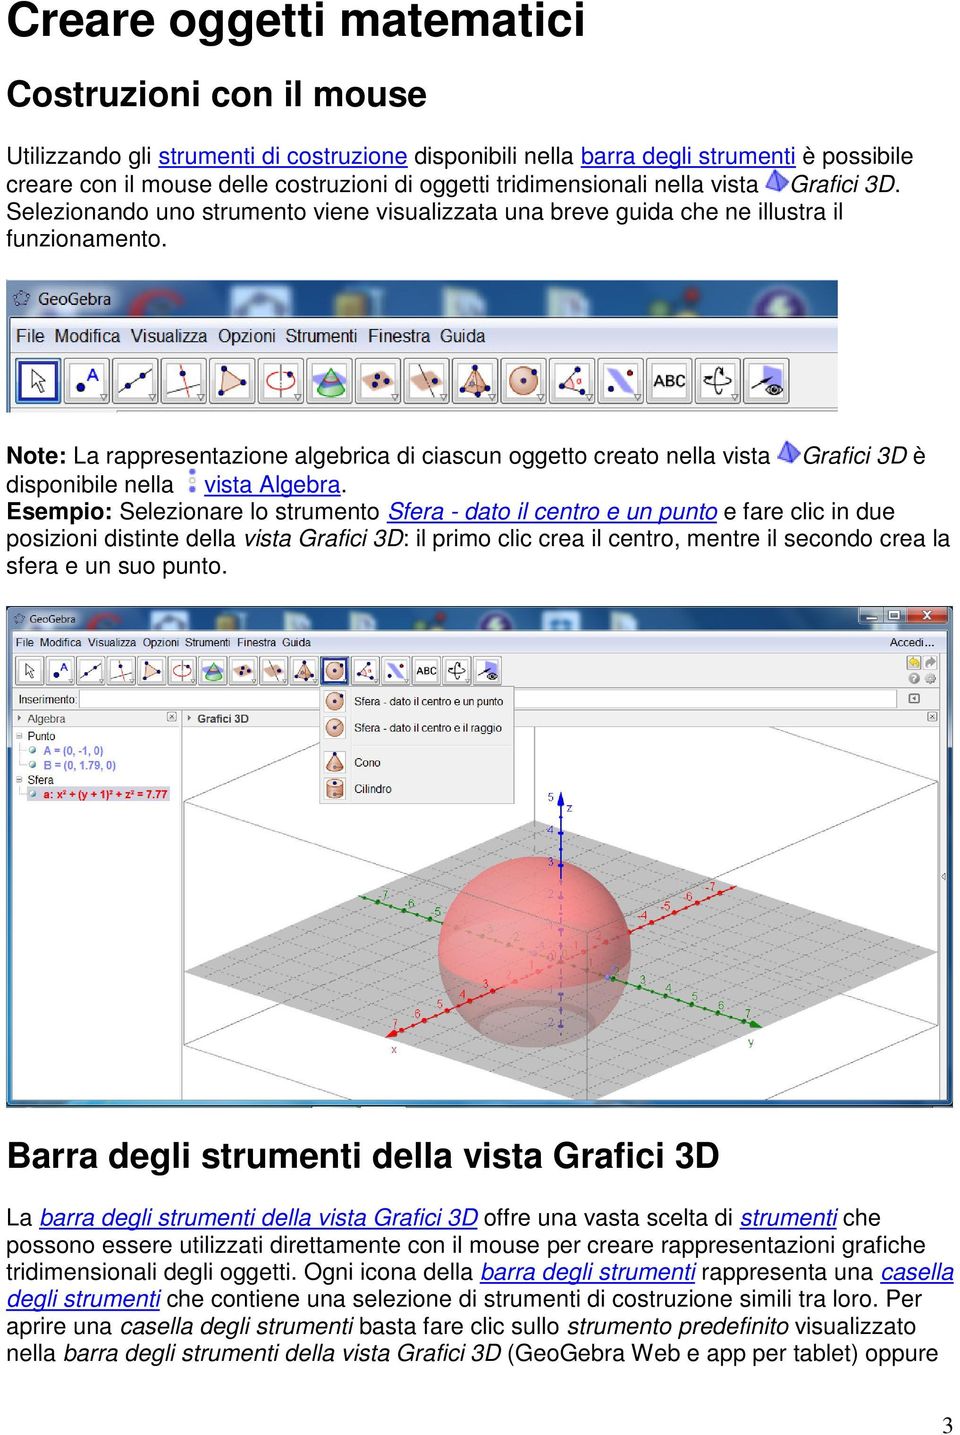 Note: La rappresentazione algebrica di ciascun oggetto creato nella vista Grafici 3D è disponibile nella vista Algebra.